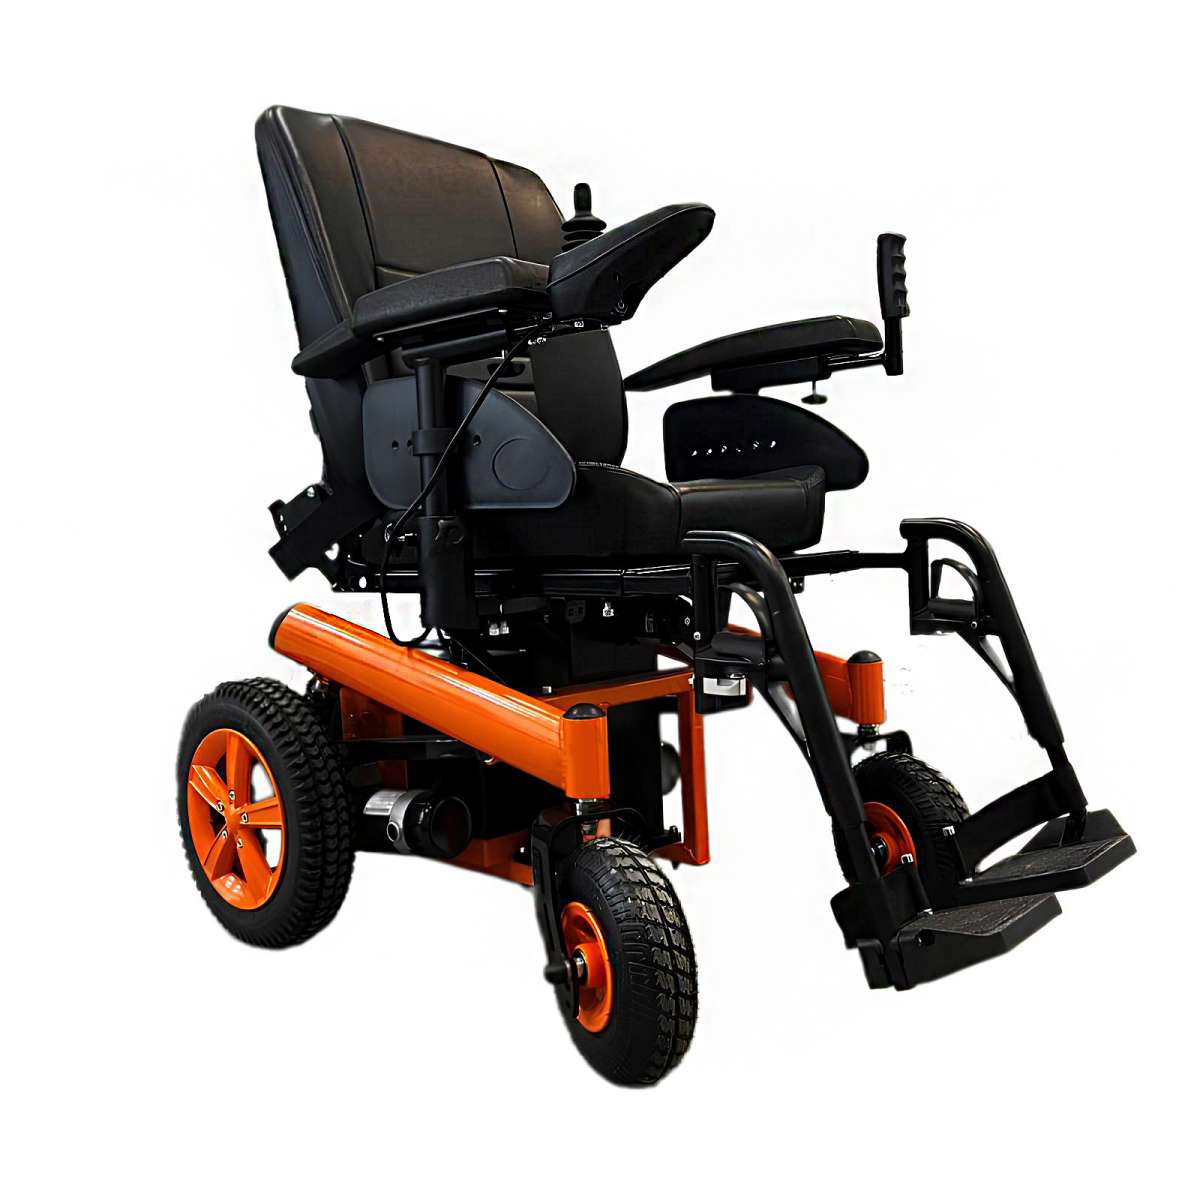 Инвалидная кресло-коляска с лифтом сиденья MET NOVA